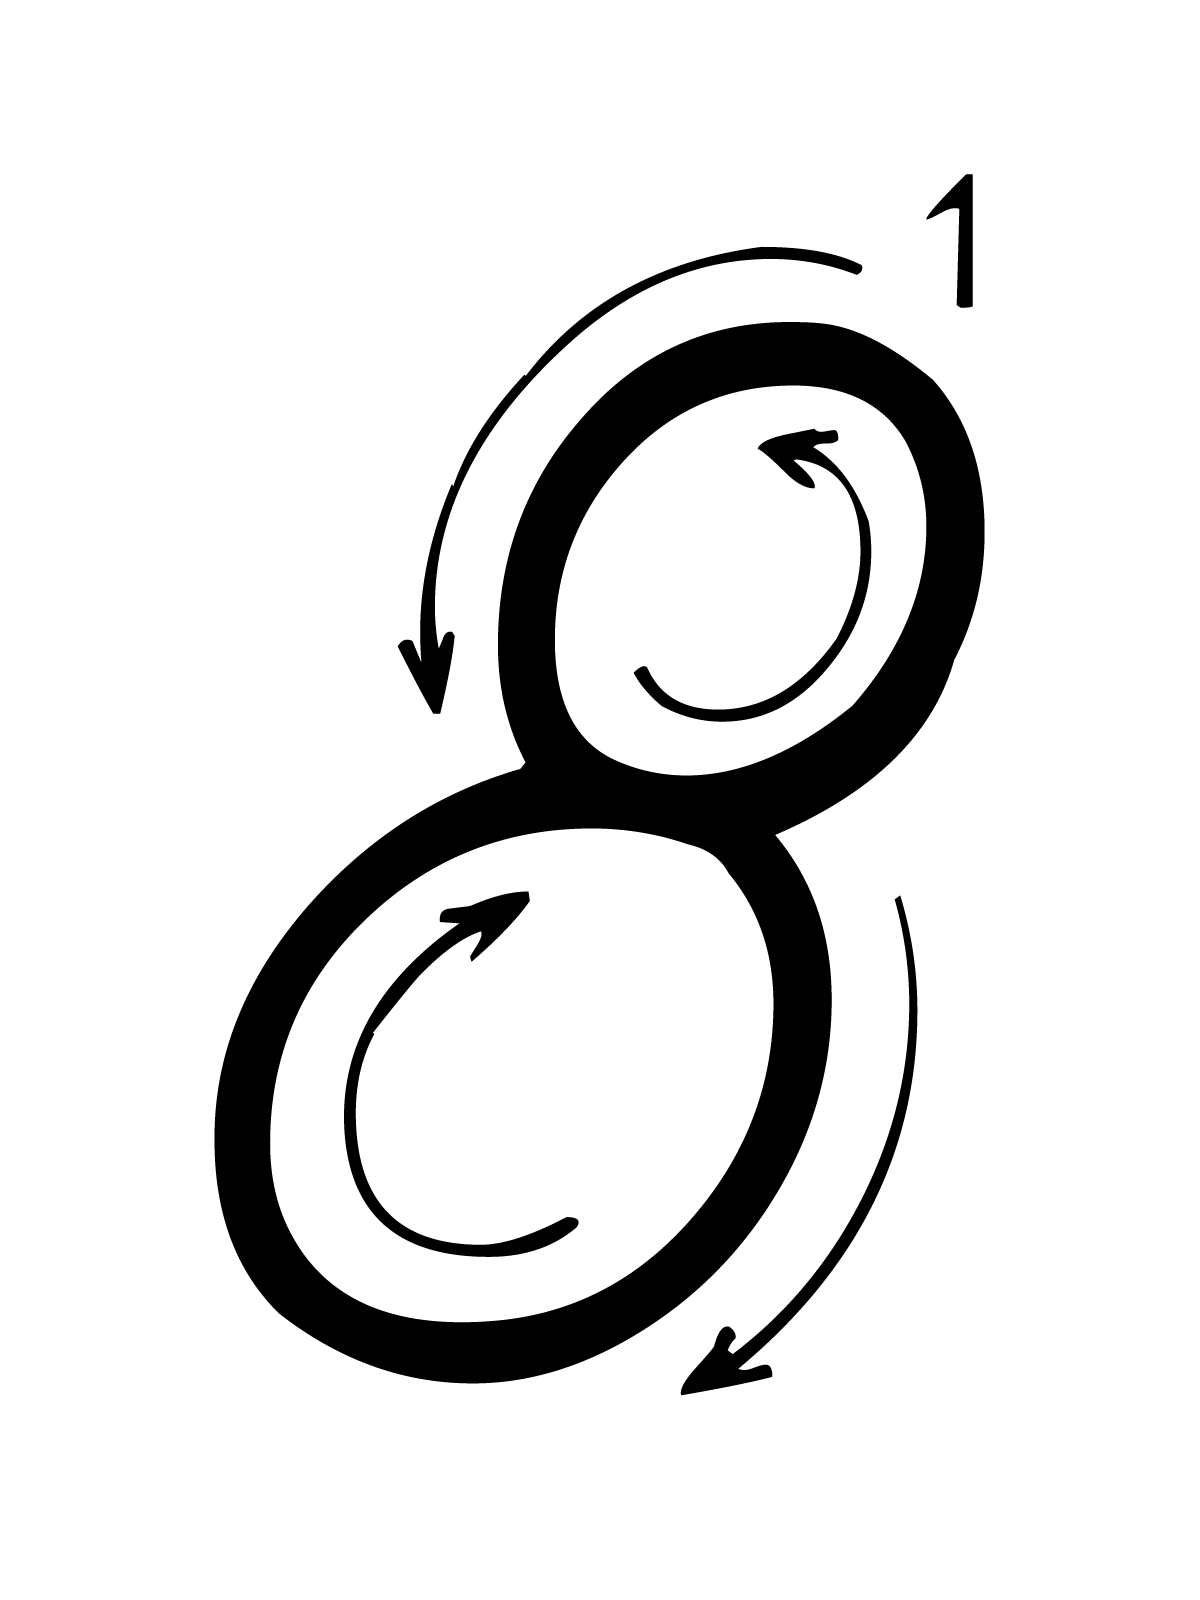 Lettere e numeri - Numero 8 (otto) con indicazioni movimento corsivo